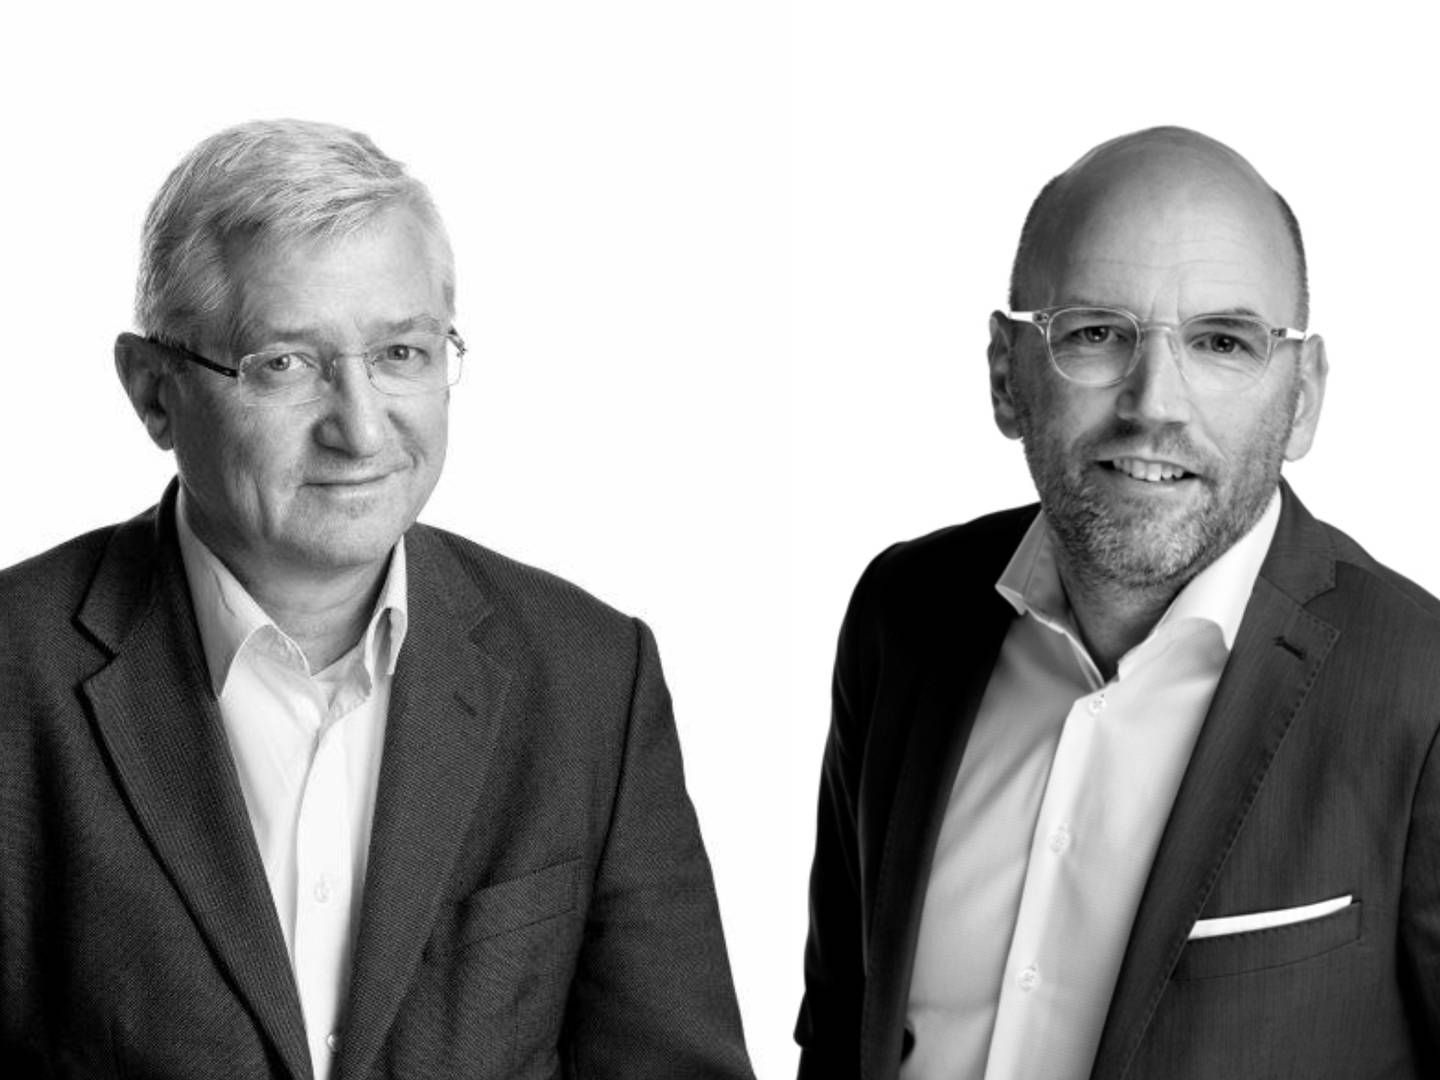 FORNØYDE: Arvid Sjøding (t.v.) og Brynjar Meling tror det vil bety mye for jussmiljøet i Stavanger at UiS nå kan tilby master i rettsvitenskap. | Foto: Sjødin Meling & Co